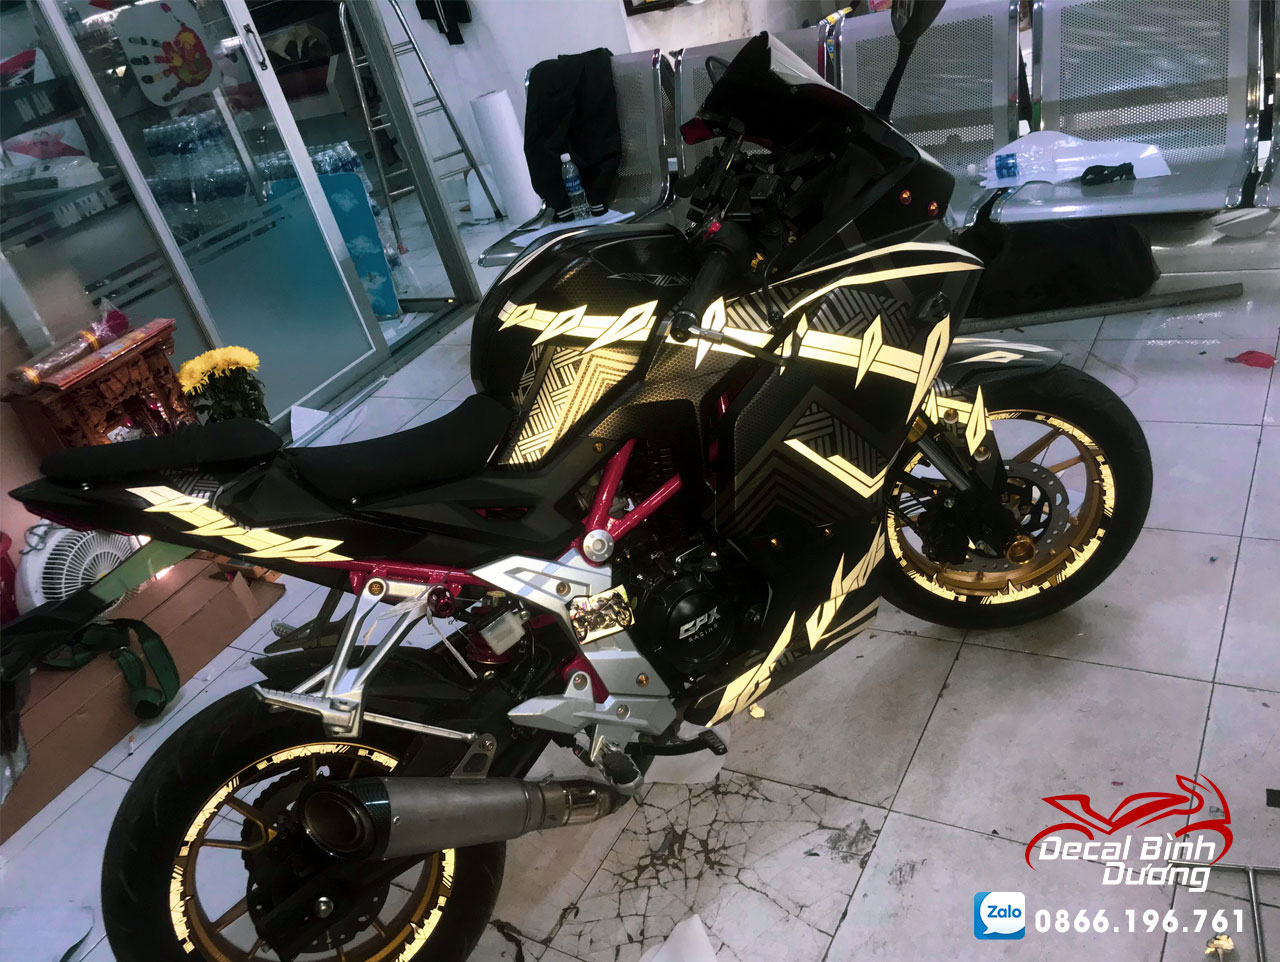 GPX Demon 150 GR độ hóa thân thành siêu phẩm Ducati với dàn chân cực đỉnh   2banhvn